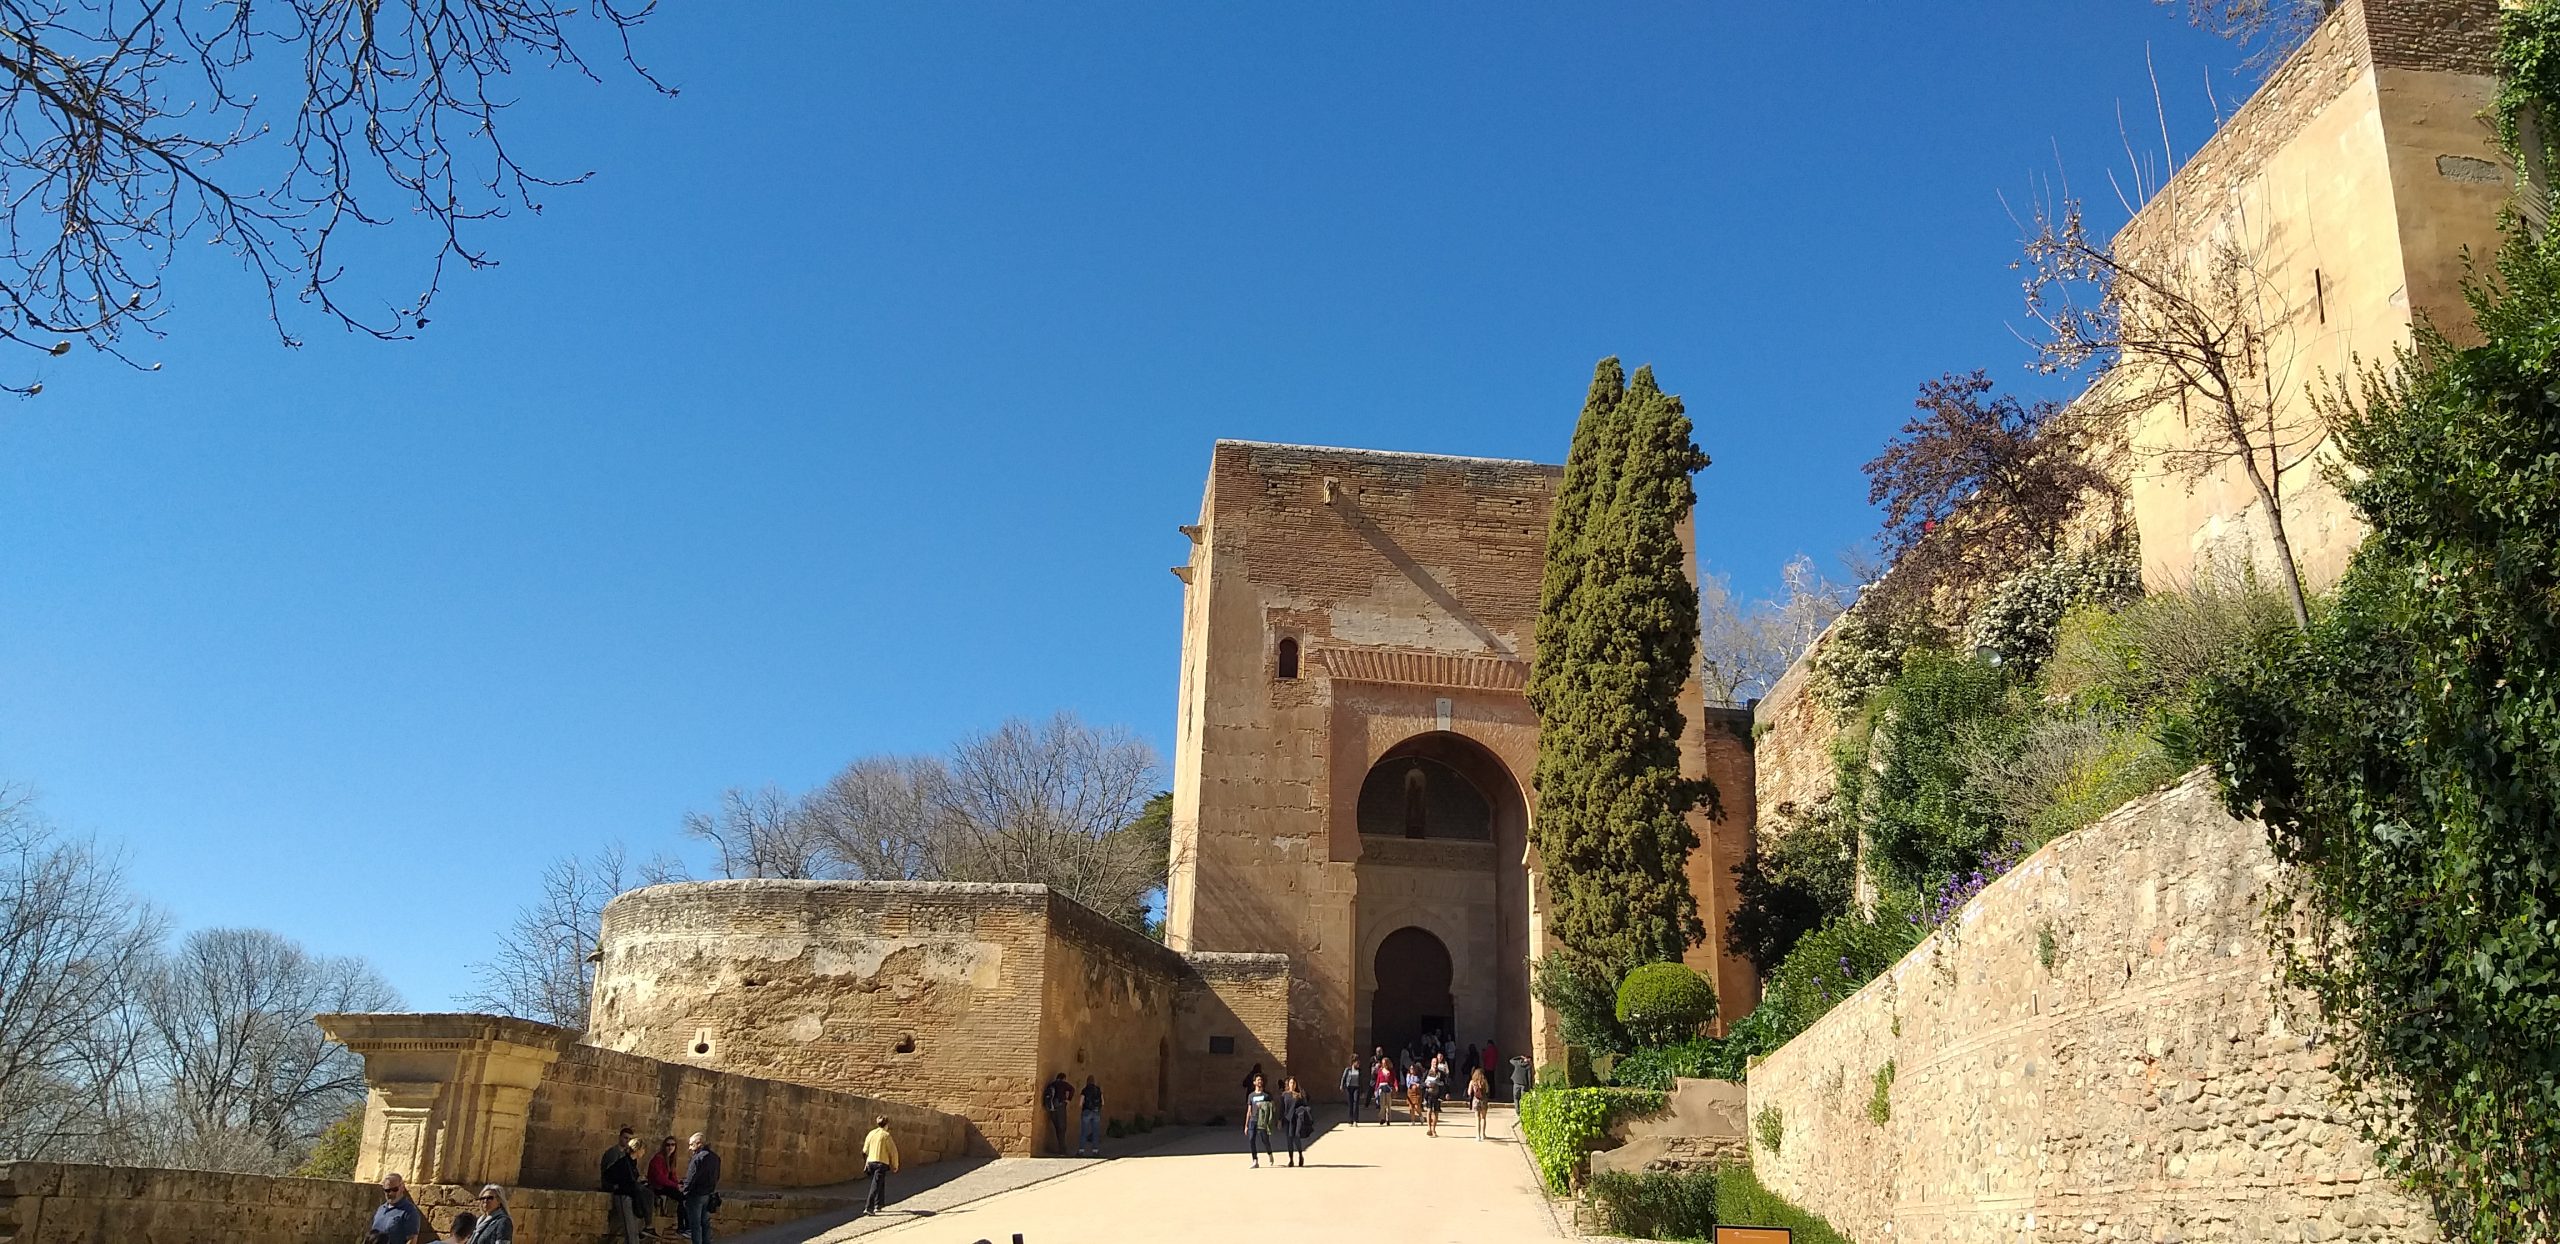 Hvordan får man fat i billetter til La Alhambra i Granada?